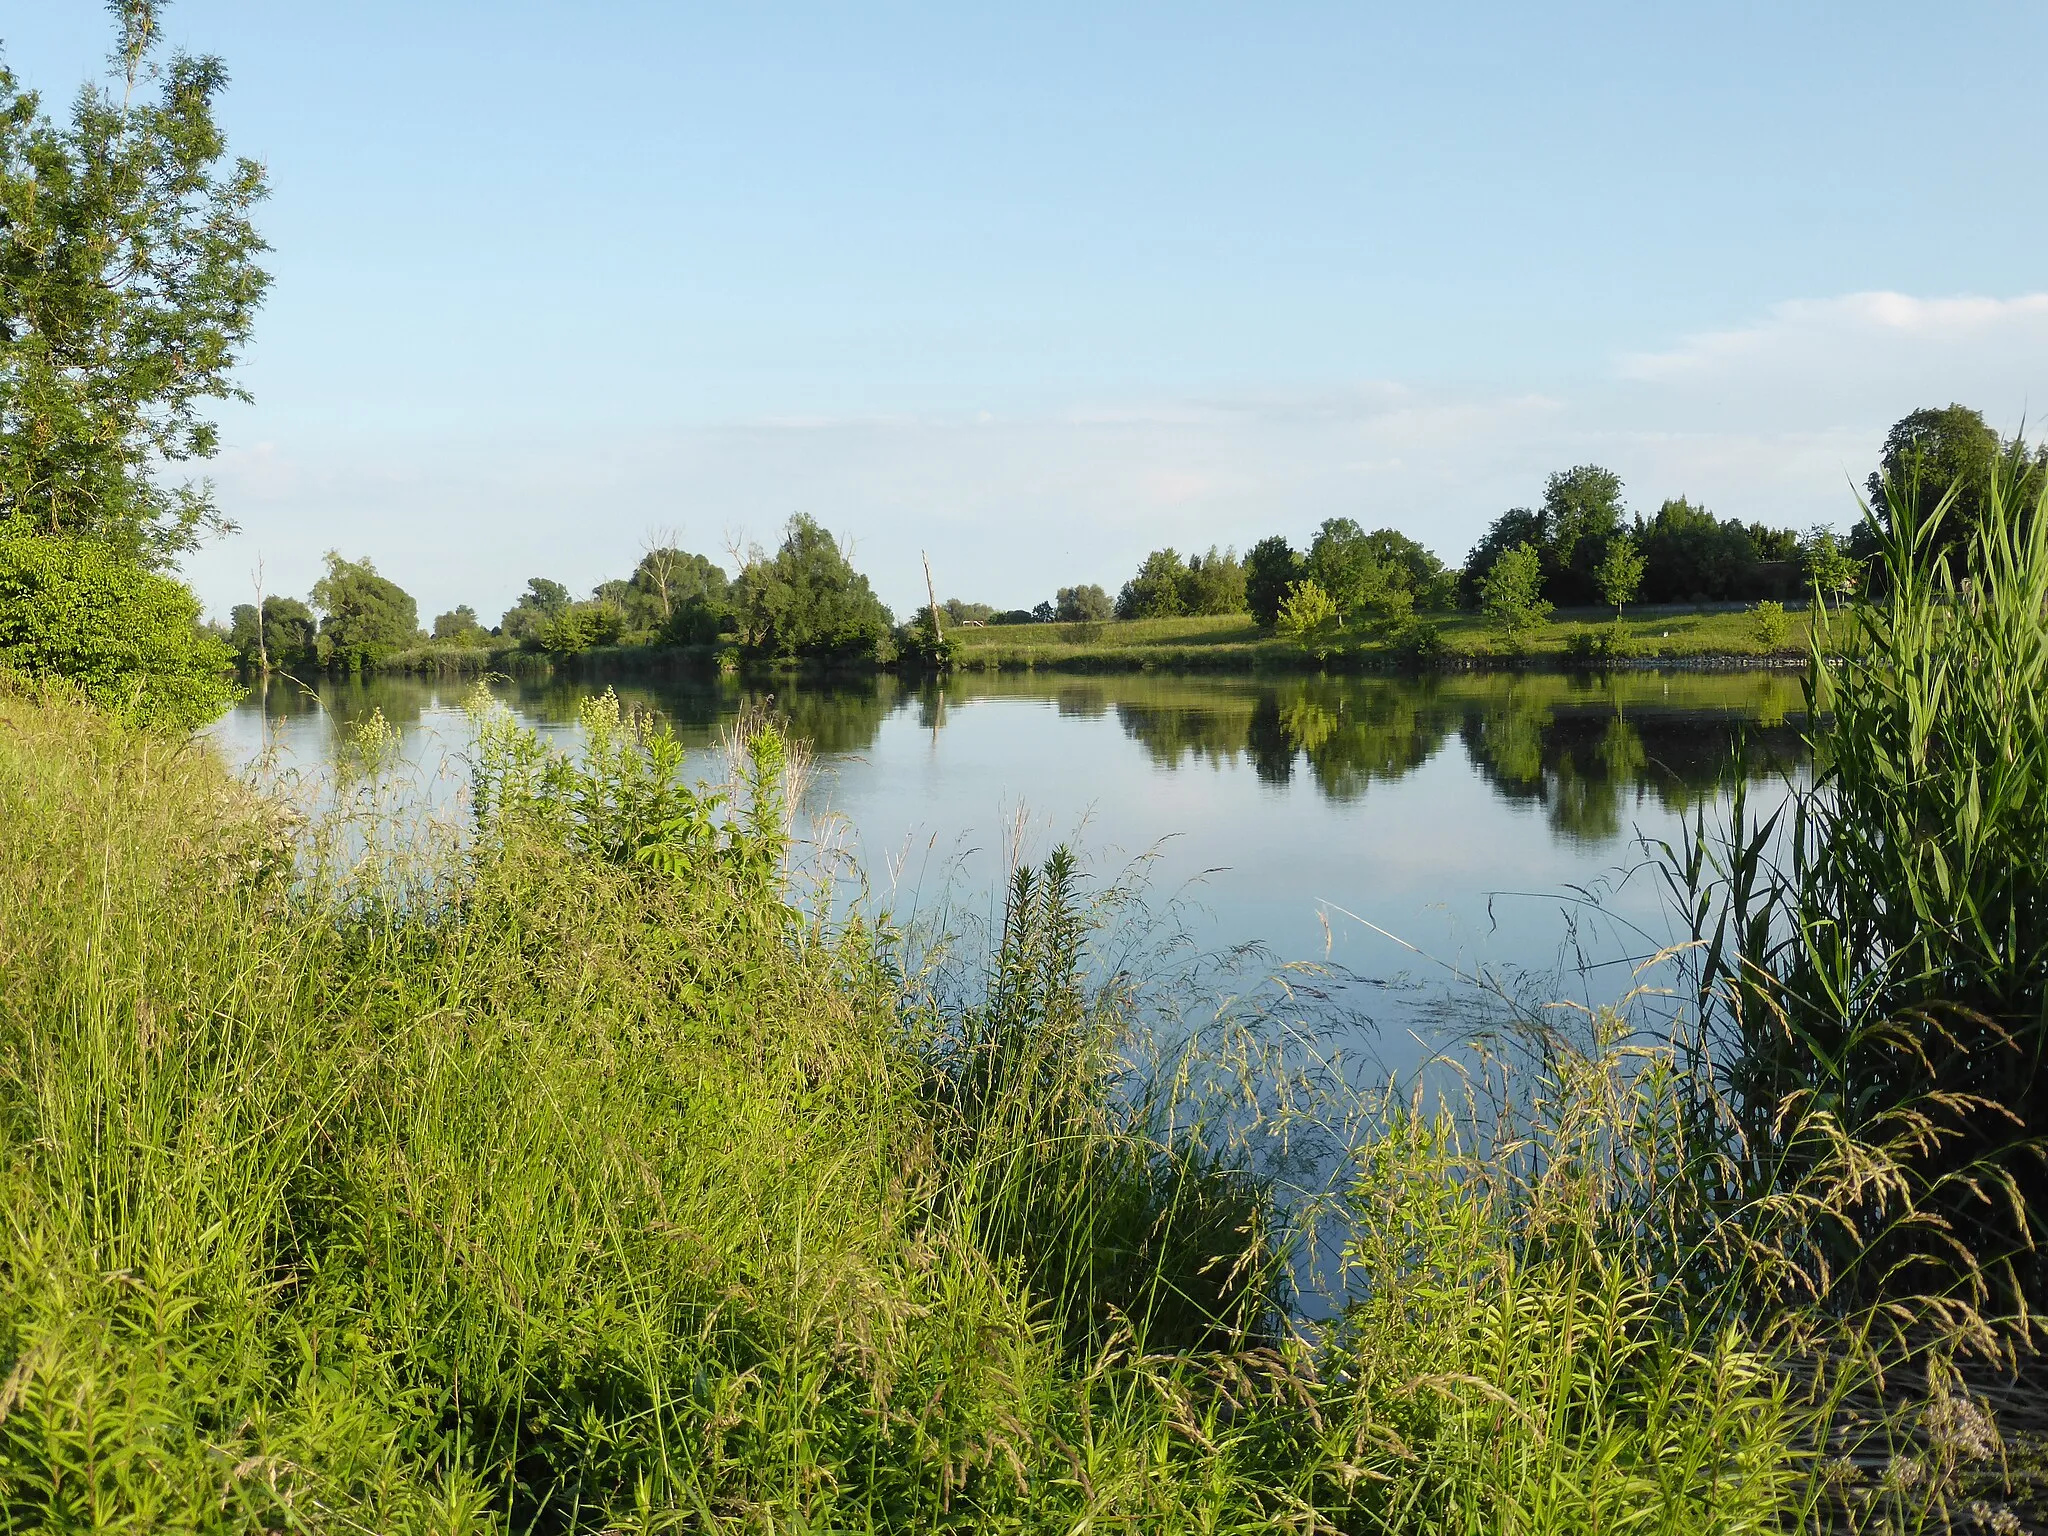 Photo showing: Die Donau im Abschnitt Stadldorf im Landkreis Straubing-Bogen. Hier grenzt auch das Naturschutzgebiet "Donauauen bei Stadldorf" an. Dort sind viele Vögel zu beobachten.